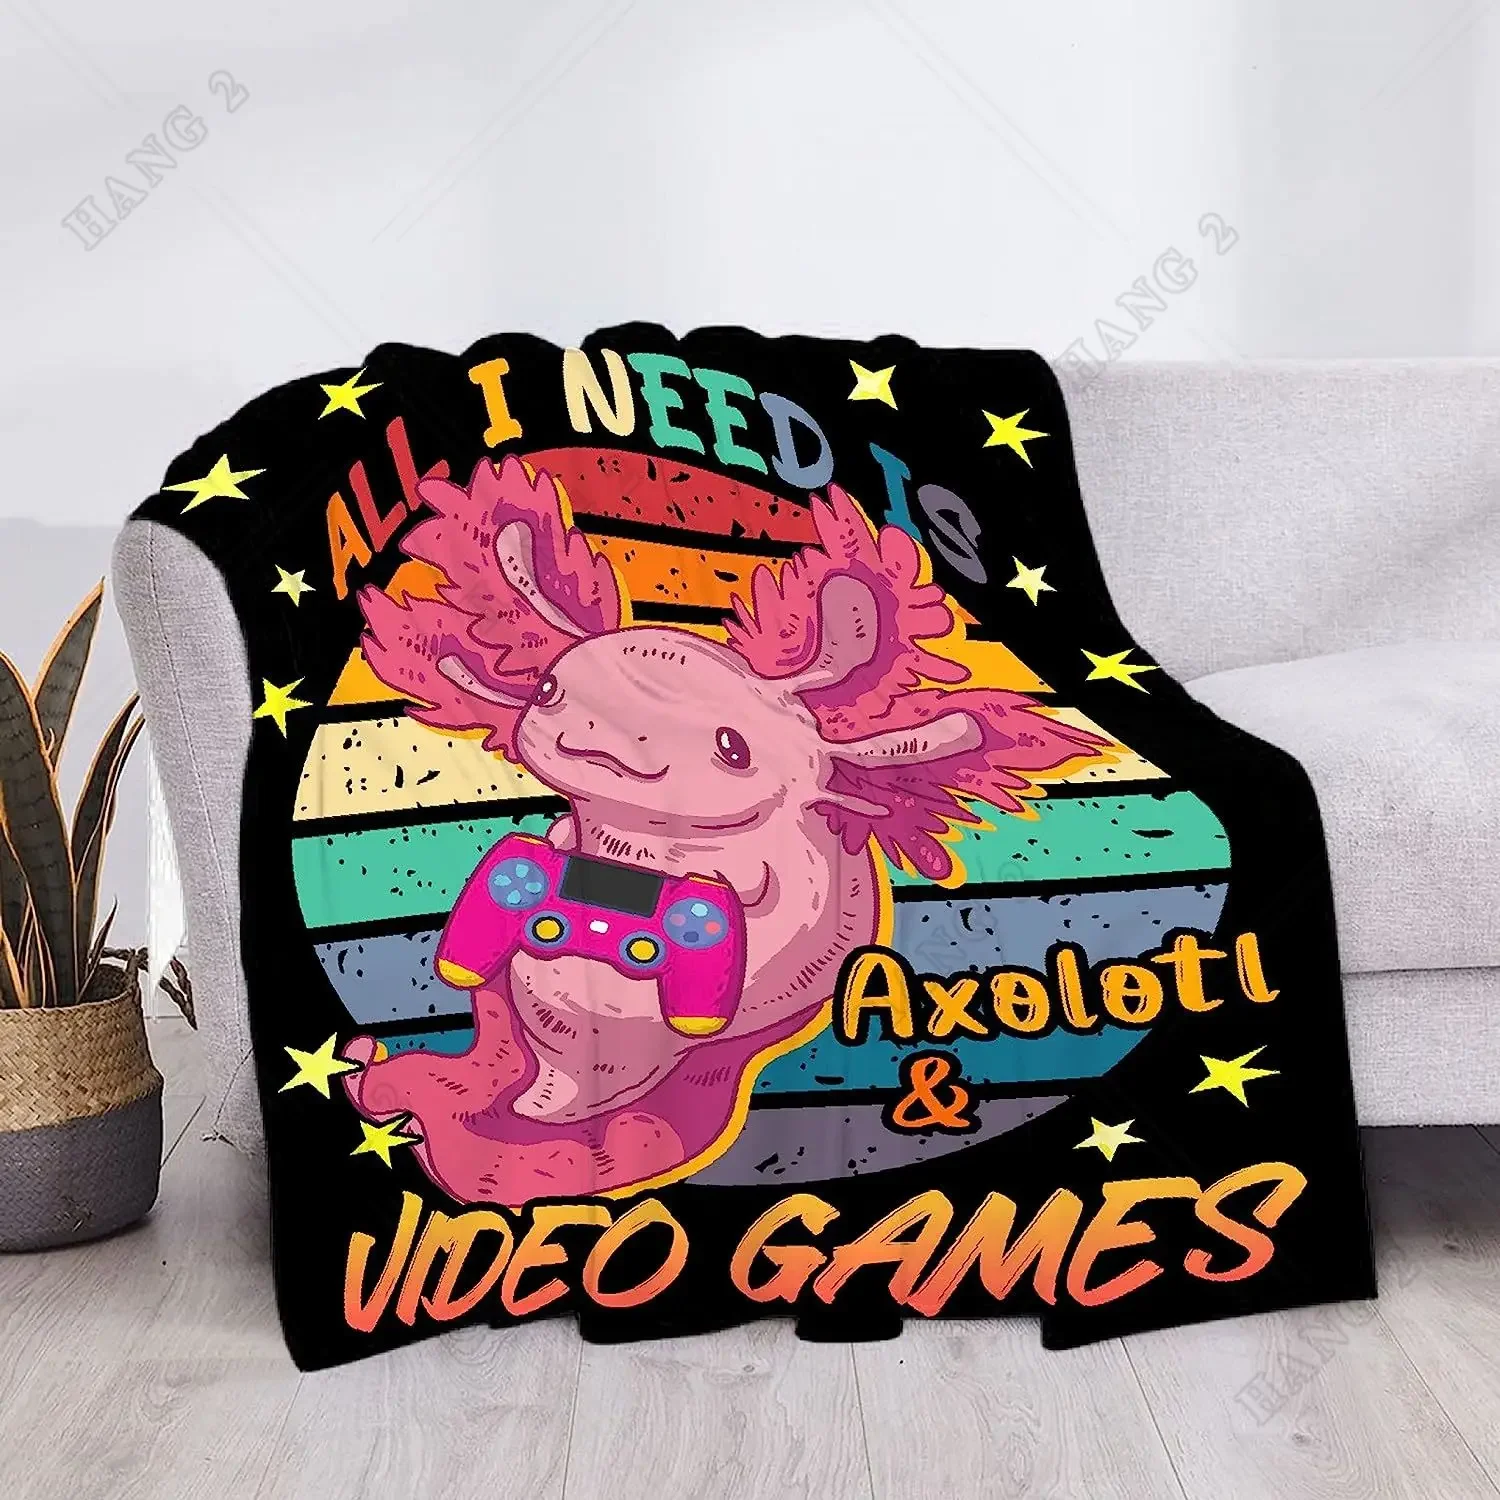 

Axolotl и игровое одеяло, все, что мне нужно, это Axolotl и видеоигры, подарок для девочек, женщин, мужчин, мягкое, уютное, легкое, теплое плюшевое одеяло